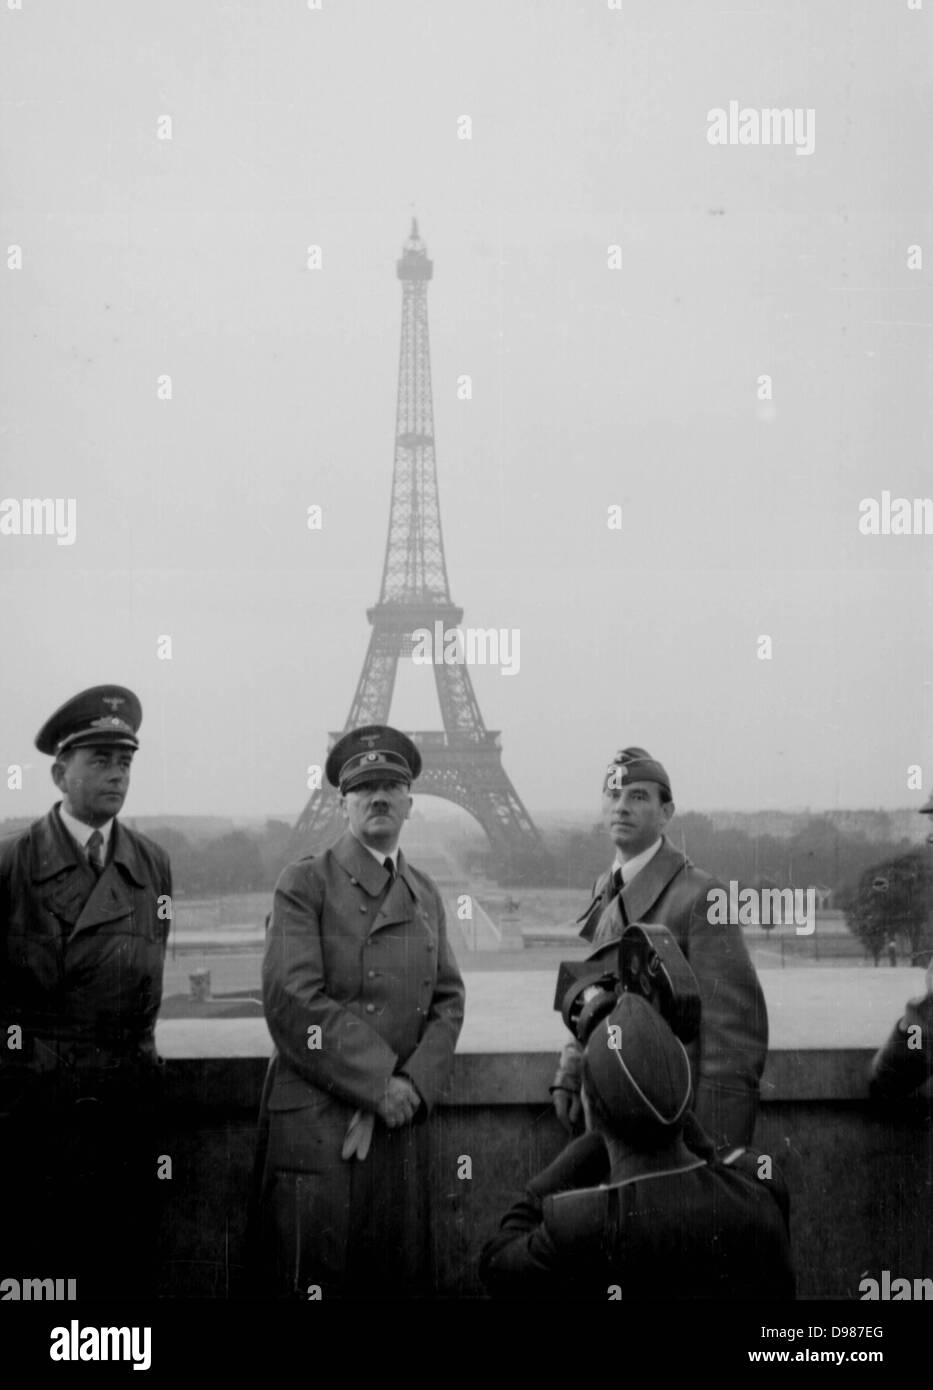 Adolf Hitler a Parigi, Francia, giugno 1940, la torre Eiffel in background. Parigi fu occupata dalle forze armate tedesche il 13 giugno 1940. Foto Stock